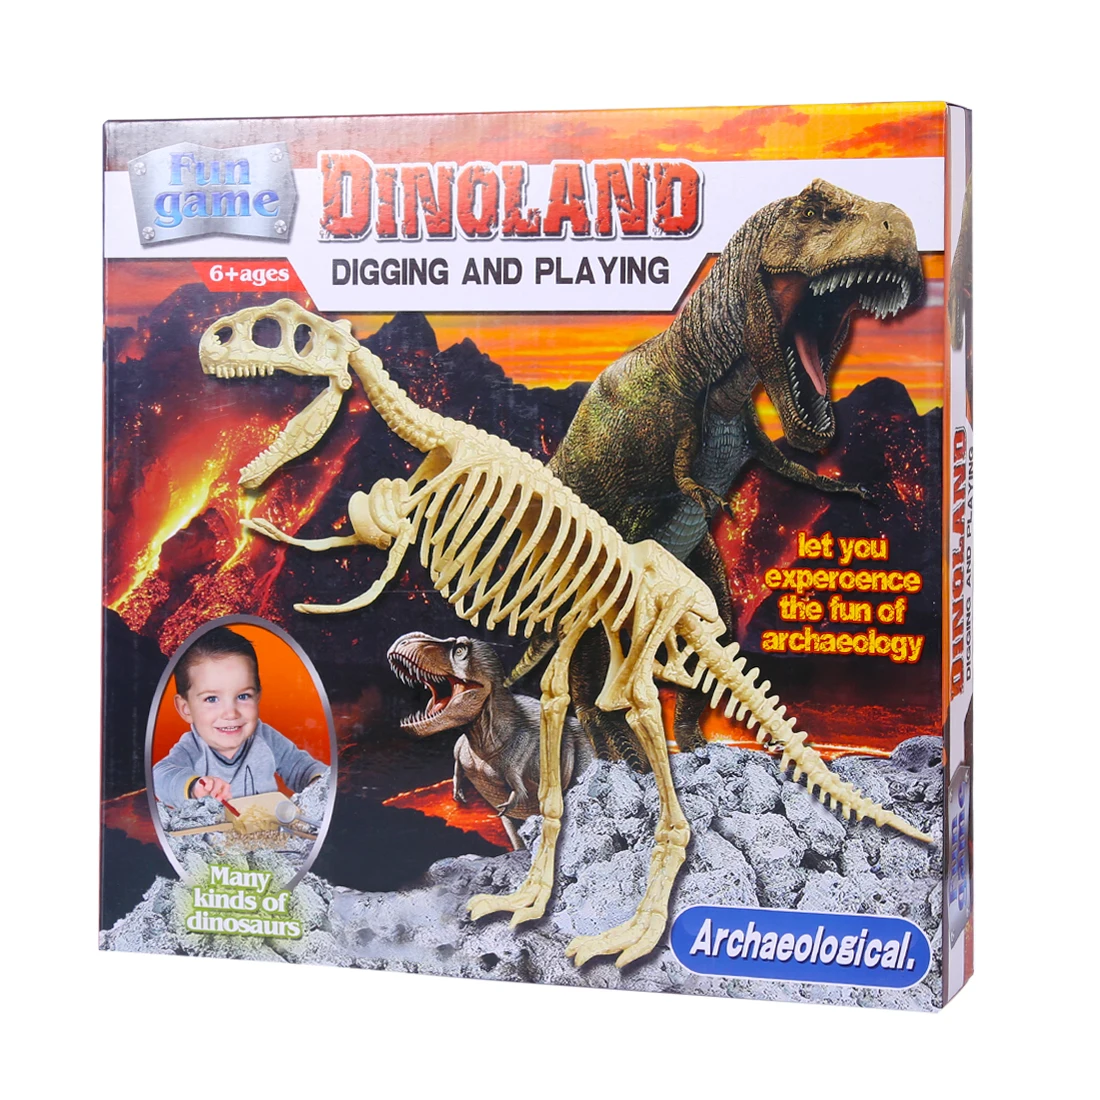 Surwish Deluxe Edition детская сборка Динозавр для раскопок, игрушки для детей